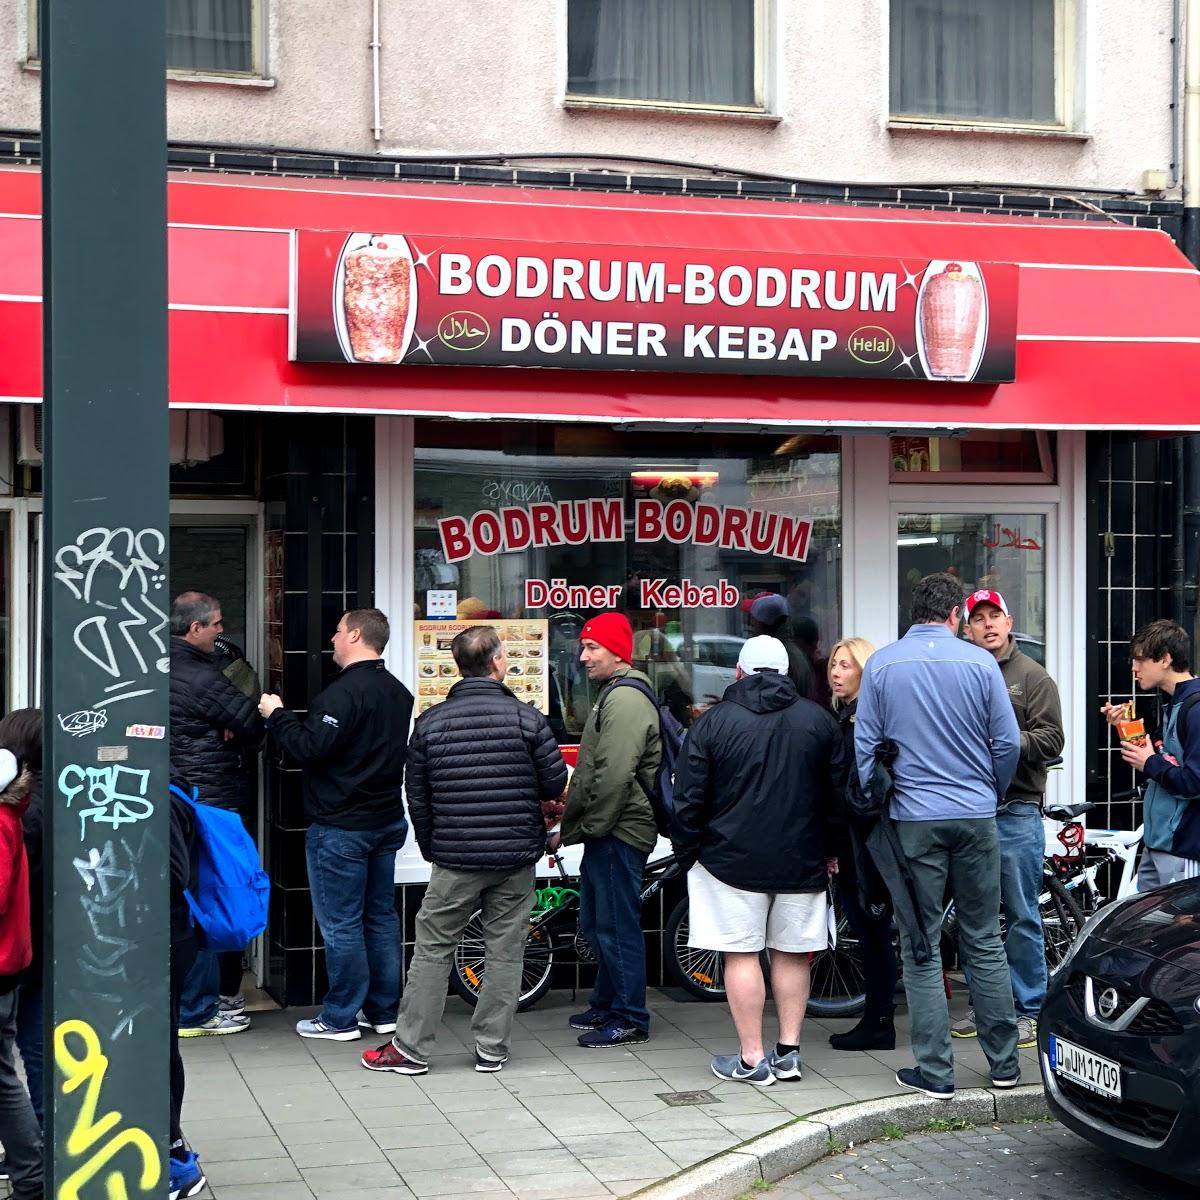 Restaurant "Bodrum Bodrum" in Düsseldorf